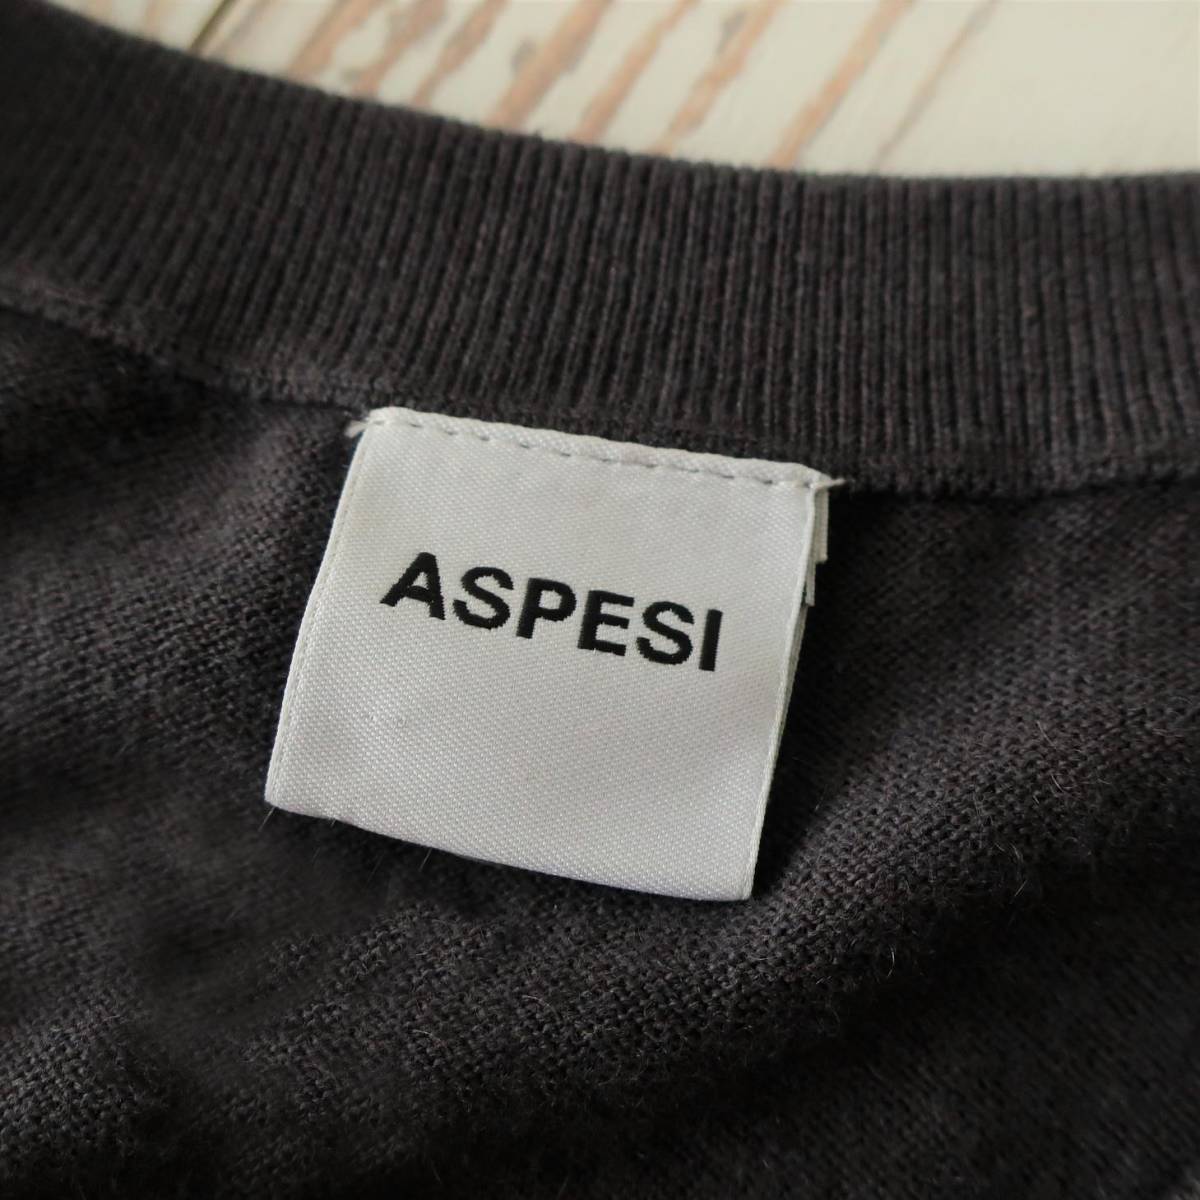  не использовался ASPESIa spec ji кашемир . шерсть вязаный свитер V шея бизнес casual тонкий длинный рукав мужской голубой серый 46 M размер 